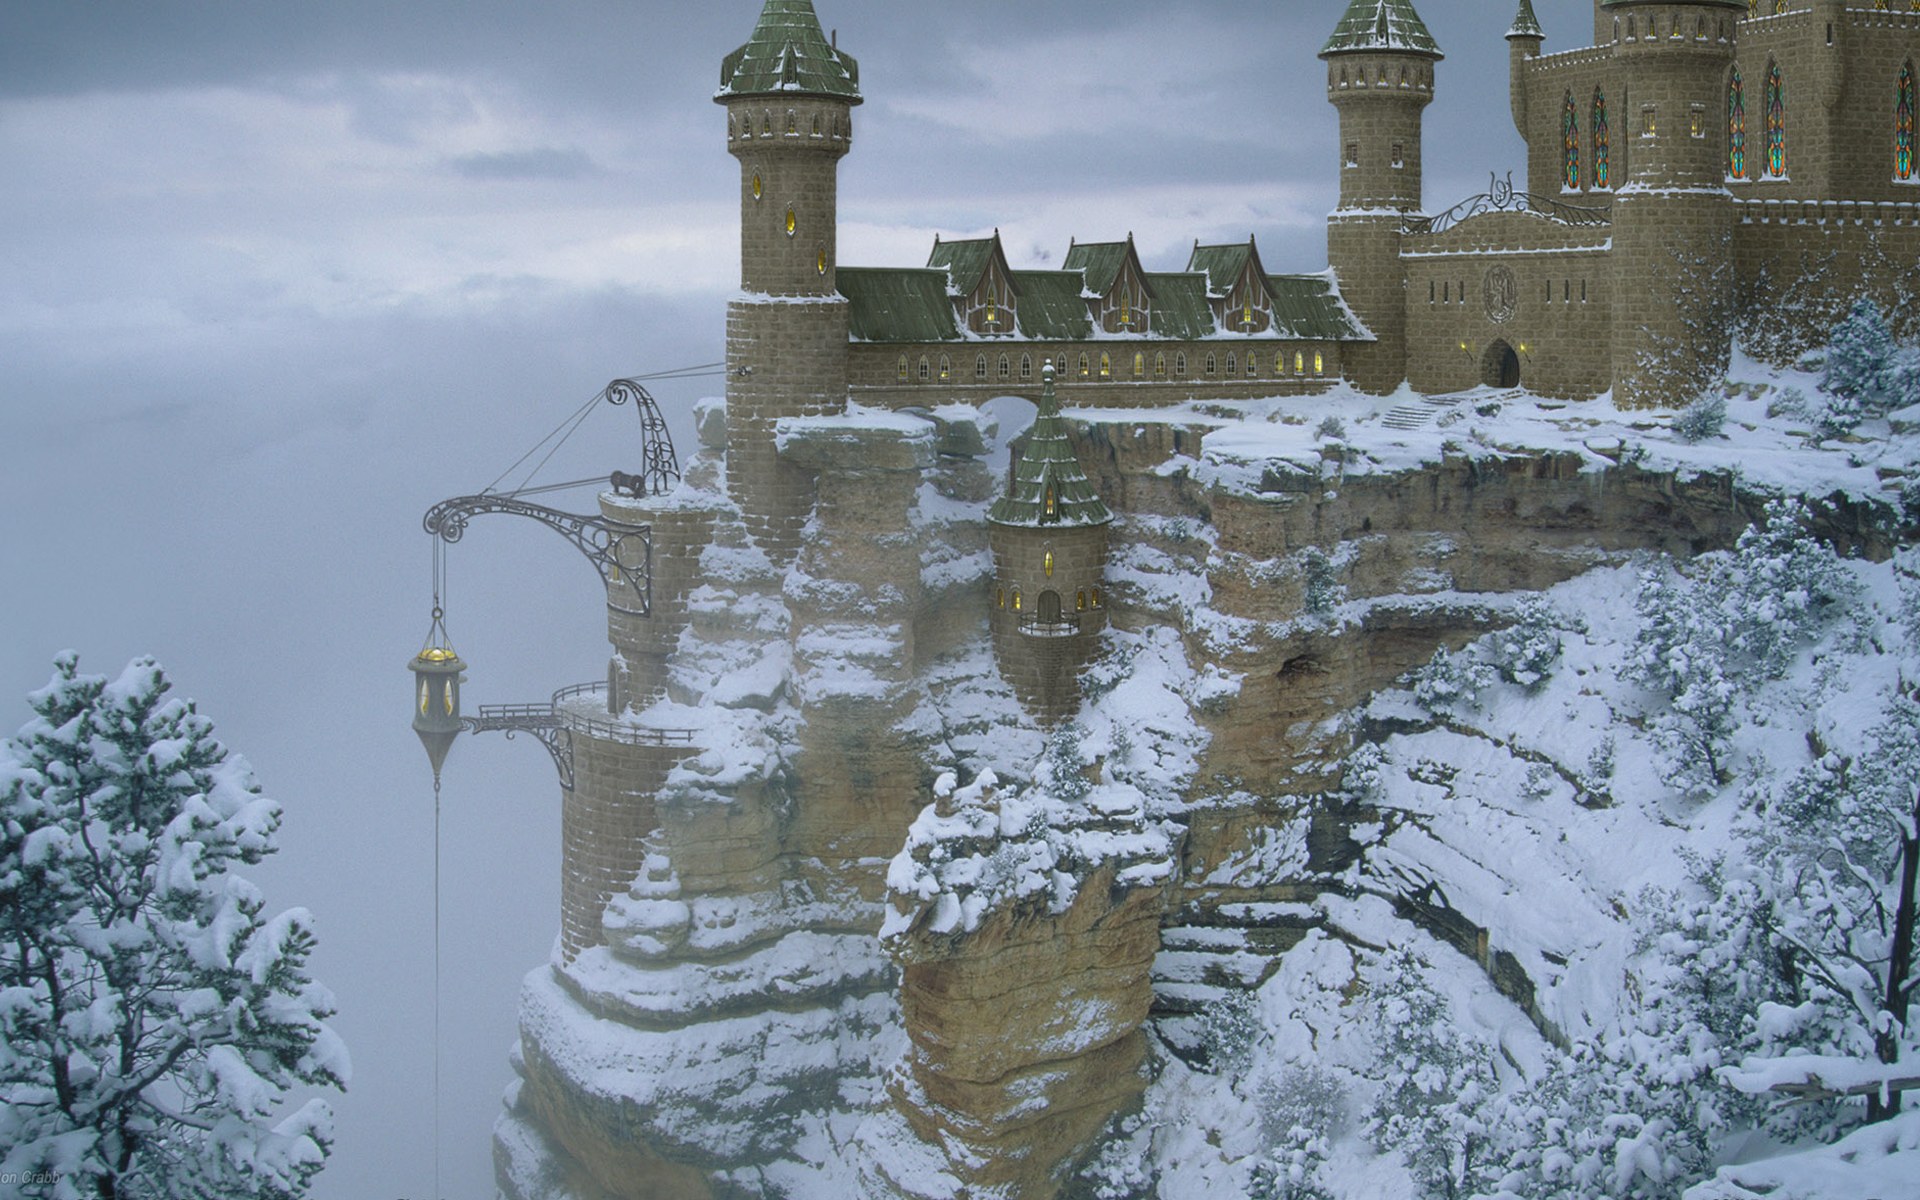 Скачать обои бесплатно Зима, Фэнтези, Снег, Замки, Замок картинка на рабочий стол ПК